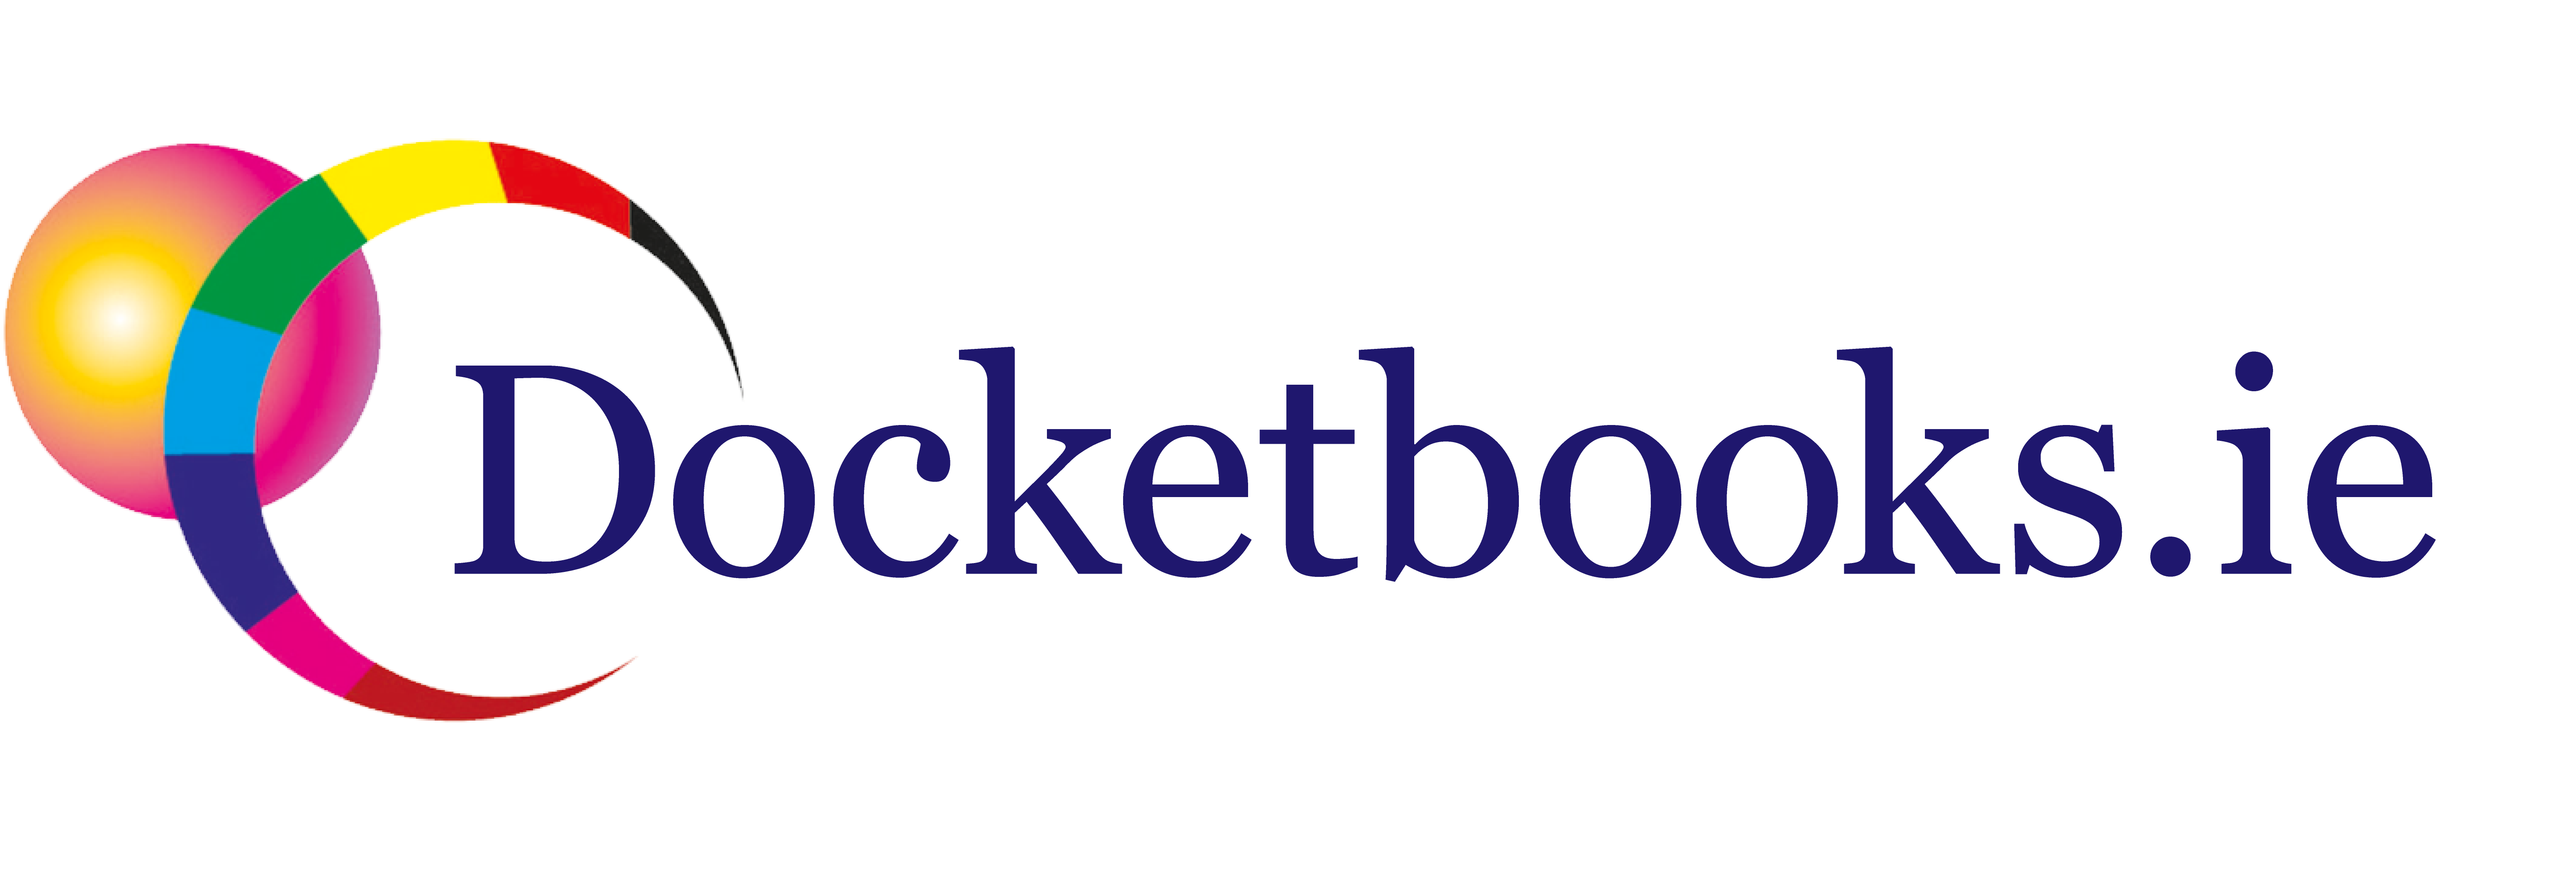 Docket Books Logo